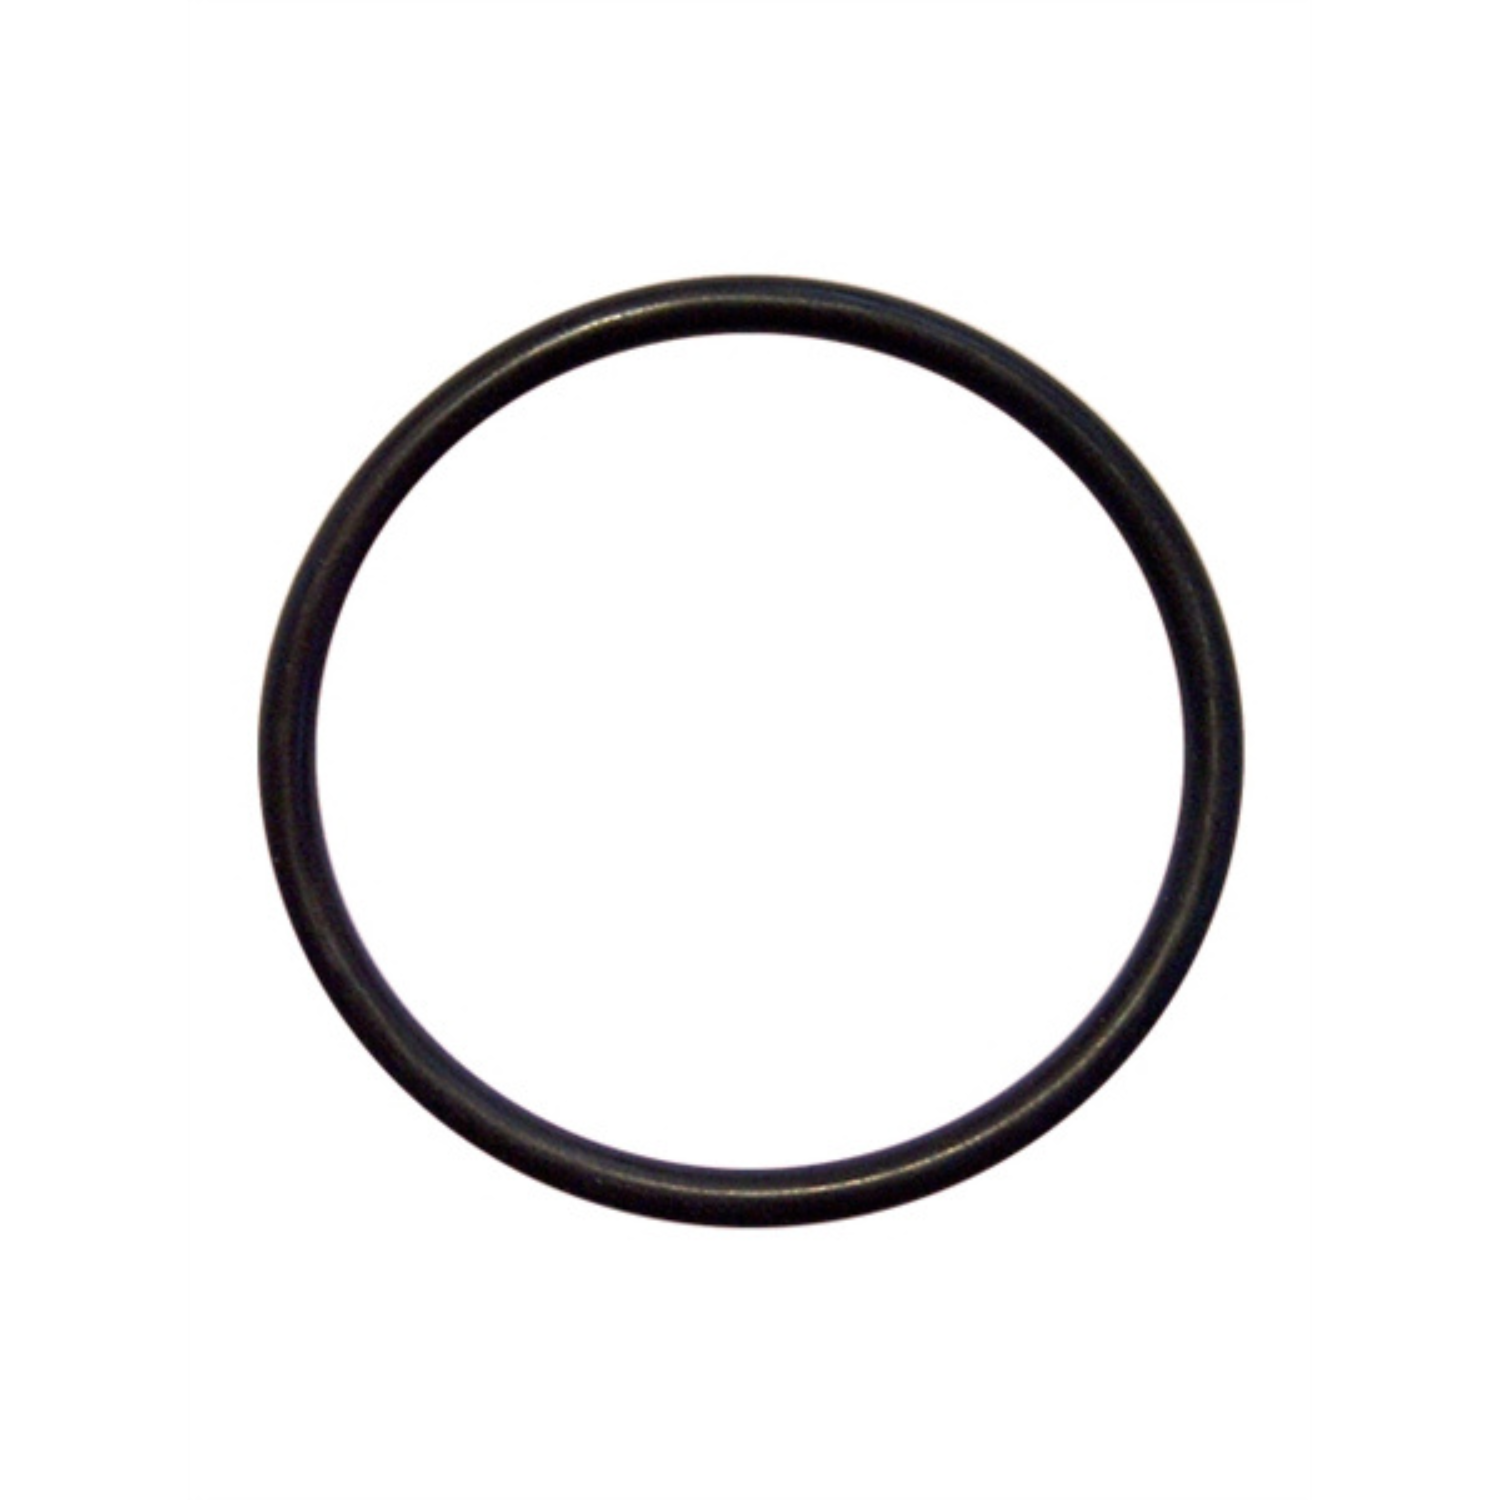 Deze dunne zwarte cock ring met een diameter van 50 mm, van Mister B en te koop bij Flavourez.